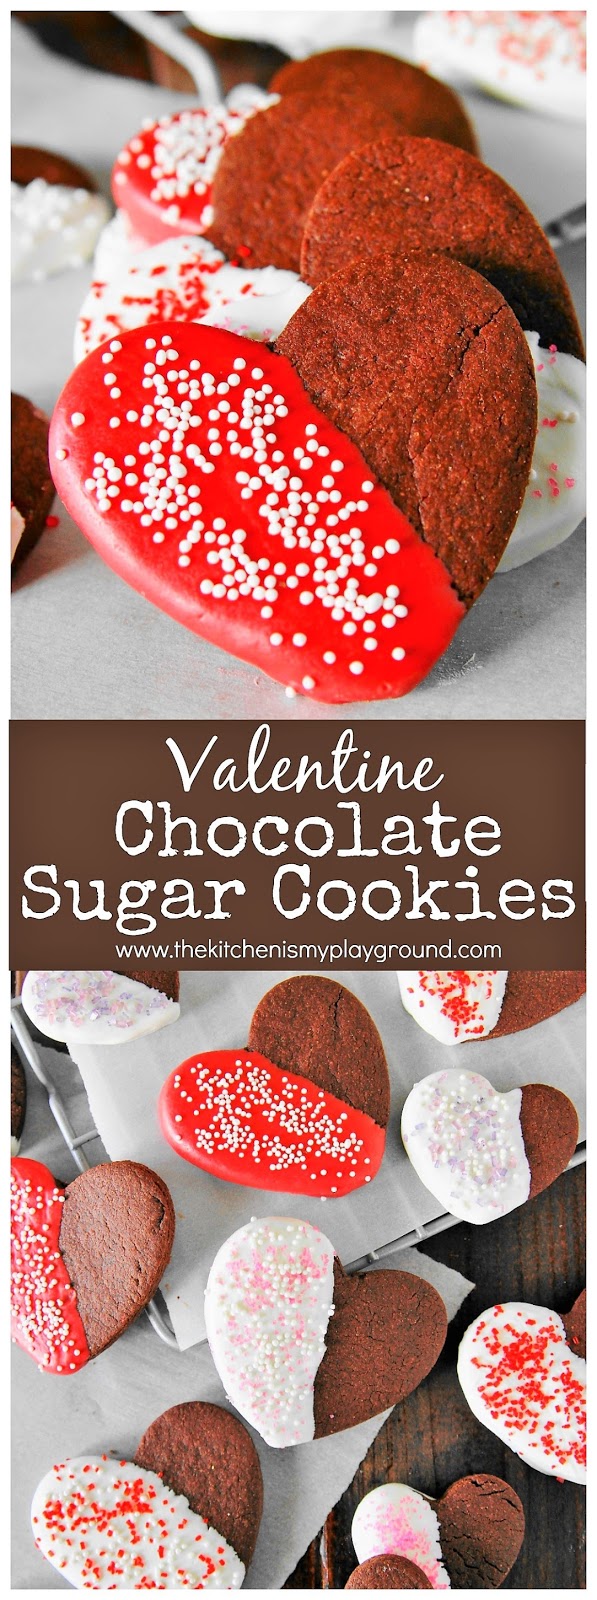 Valentine Chocolate Sugar Cookies - The Kitchen is My Playground